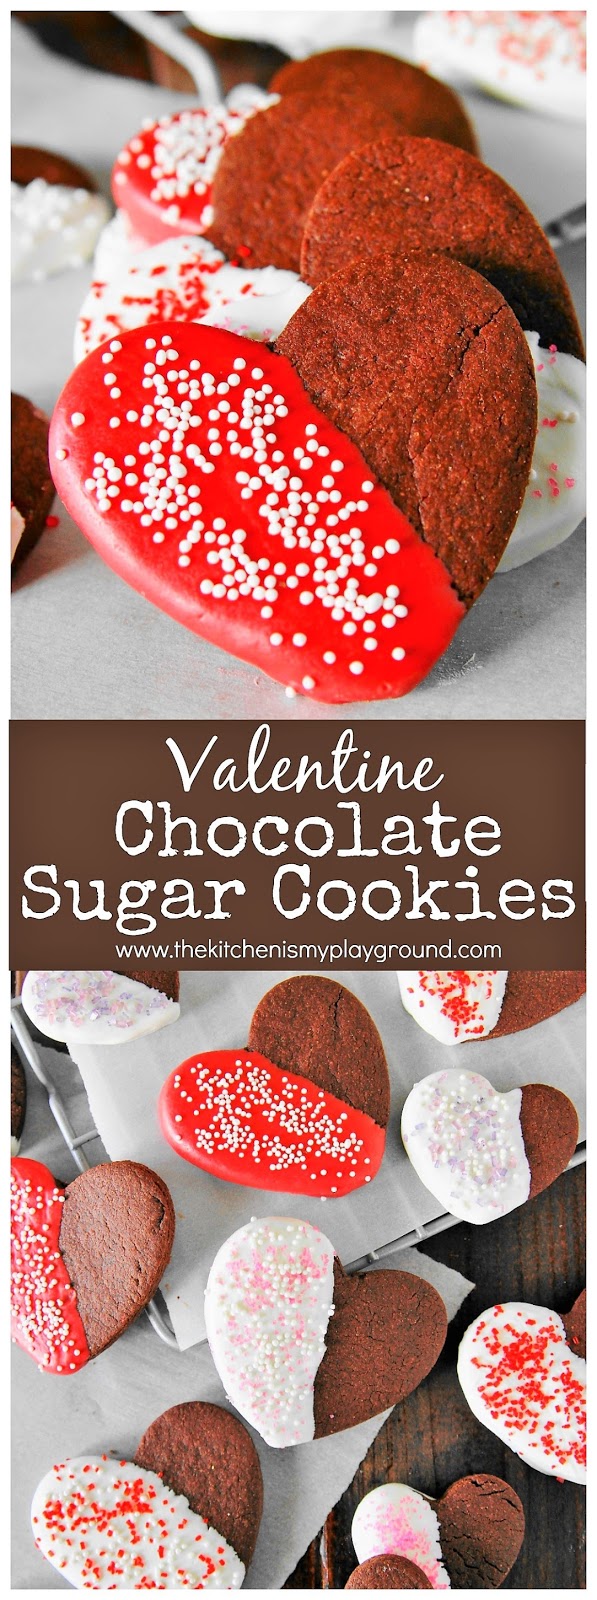 Valentine Chocolate Sugar Cookies - The Kitchen is My Playground